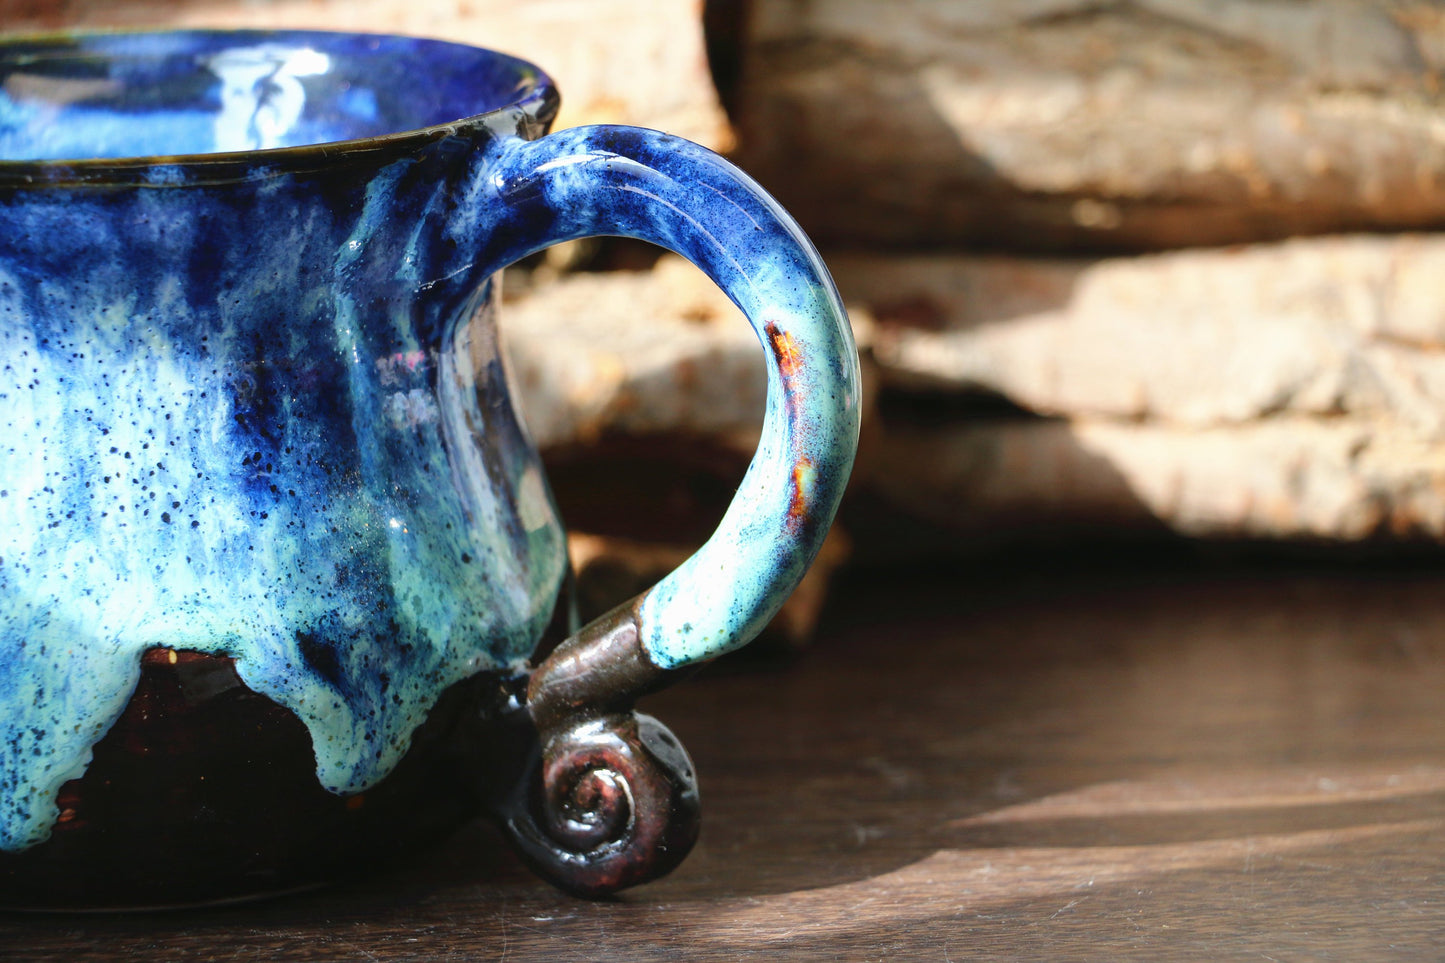 Handmade Snow Mountain Style Ceramic Coffee Mug, 18 Oz Personalized Pottery Mug